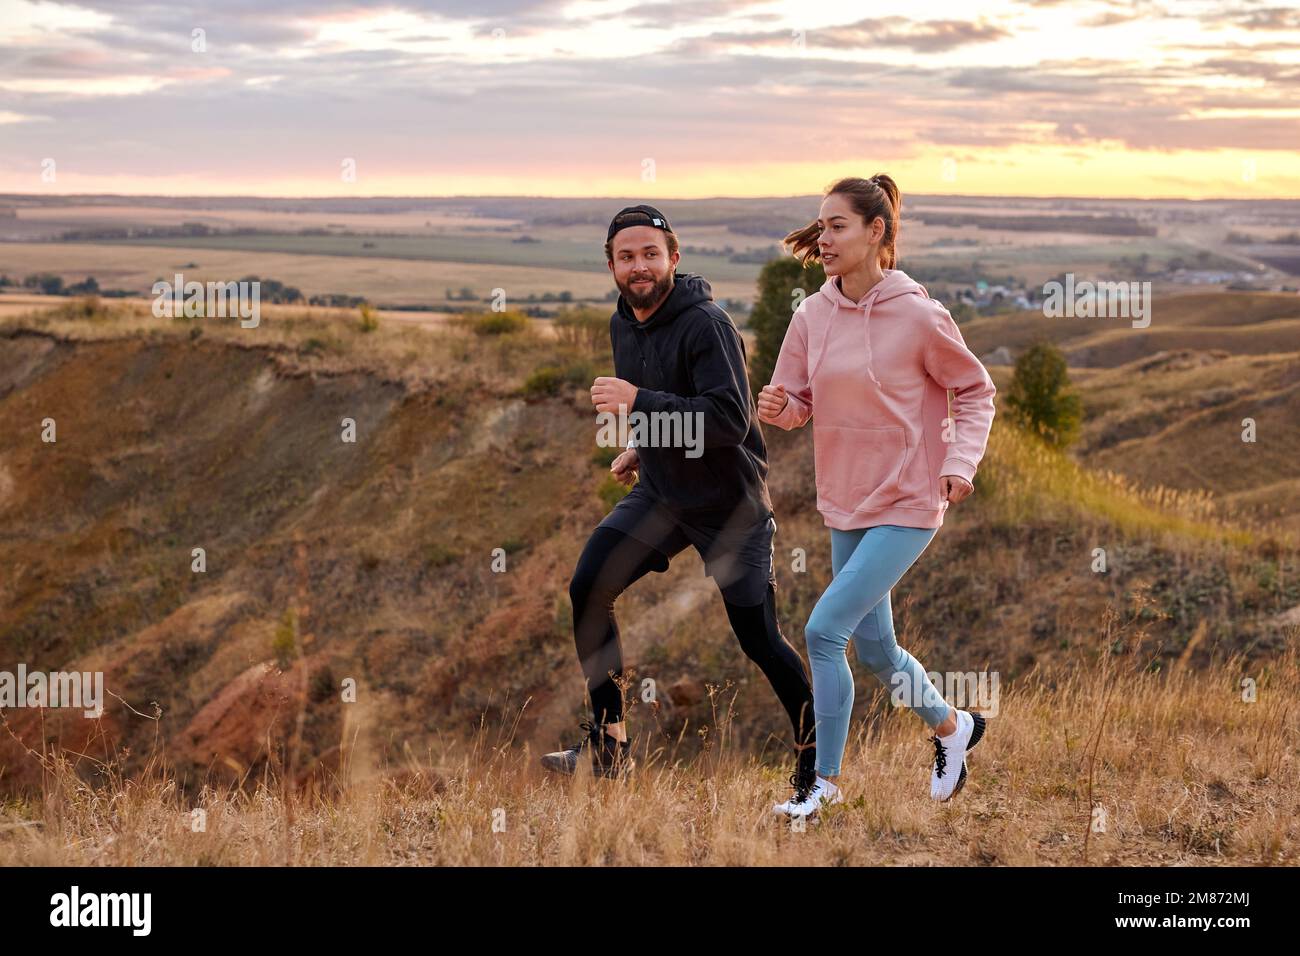 Paar Laufen bei Sonnenuntergang oder Sonnenaufgang entlang der Feldarberge, Morgenjoggen von gesundem Lebensstil in der Morgendämmerung, Cardio-Belastung erhöht die Herzfrequenz, Zeit zu dr.. Stockfoto